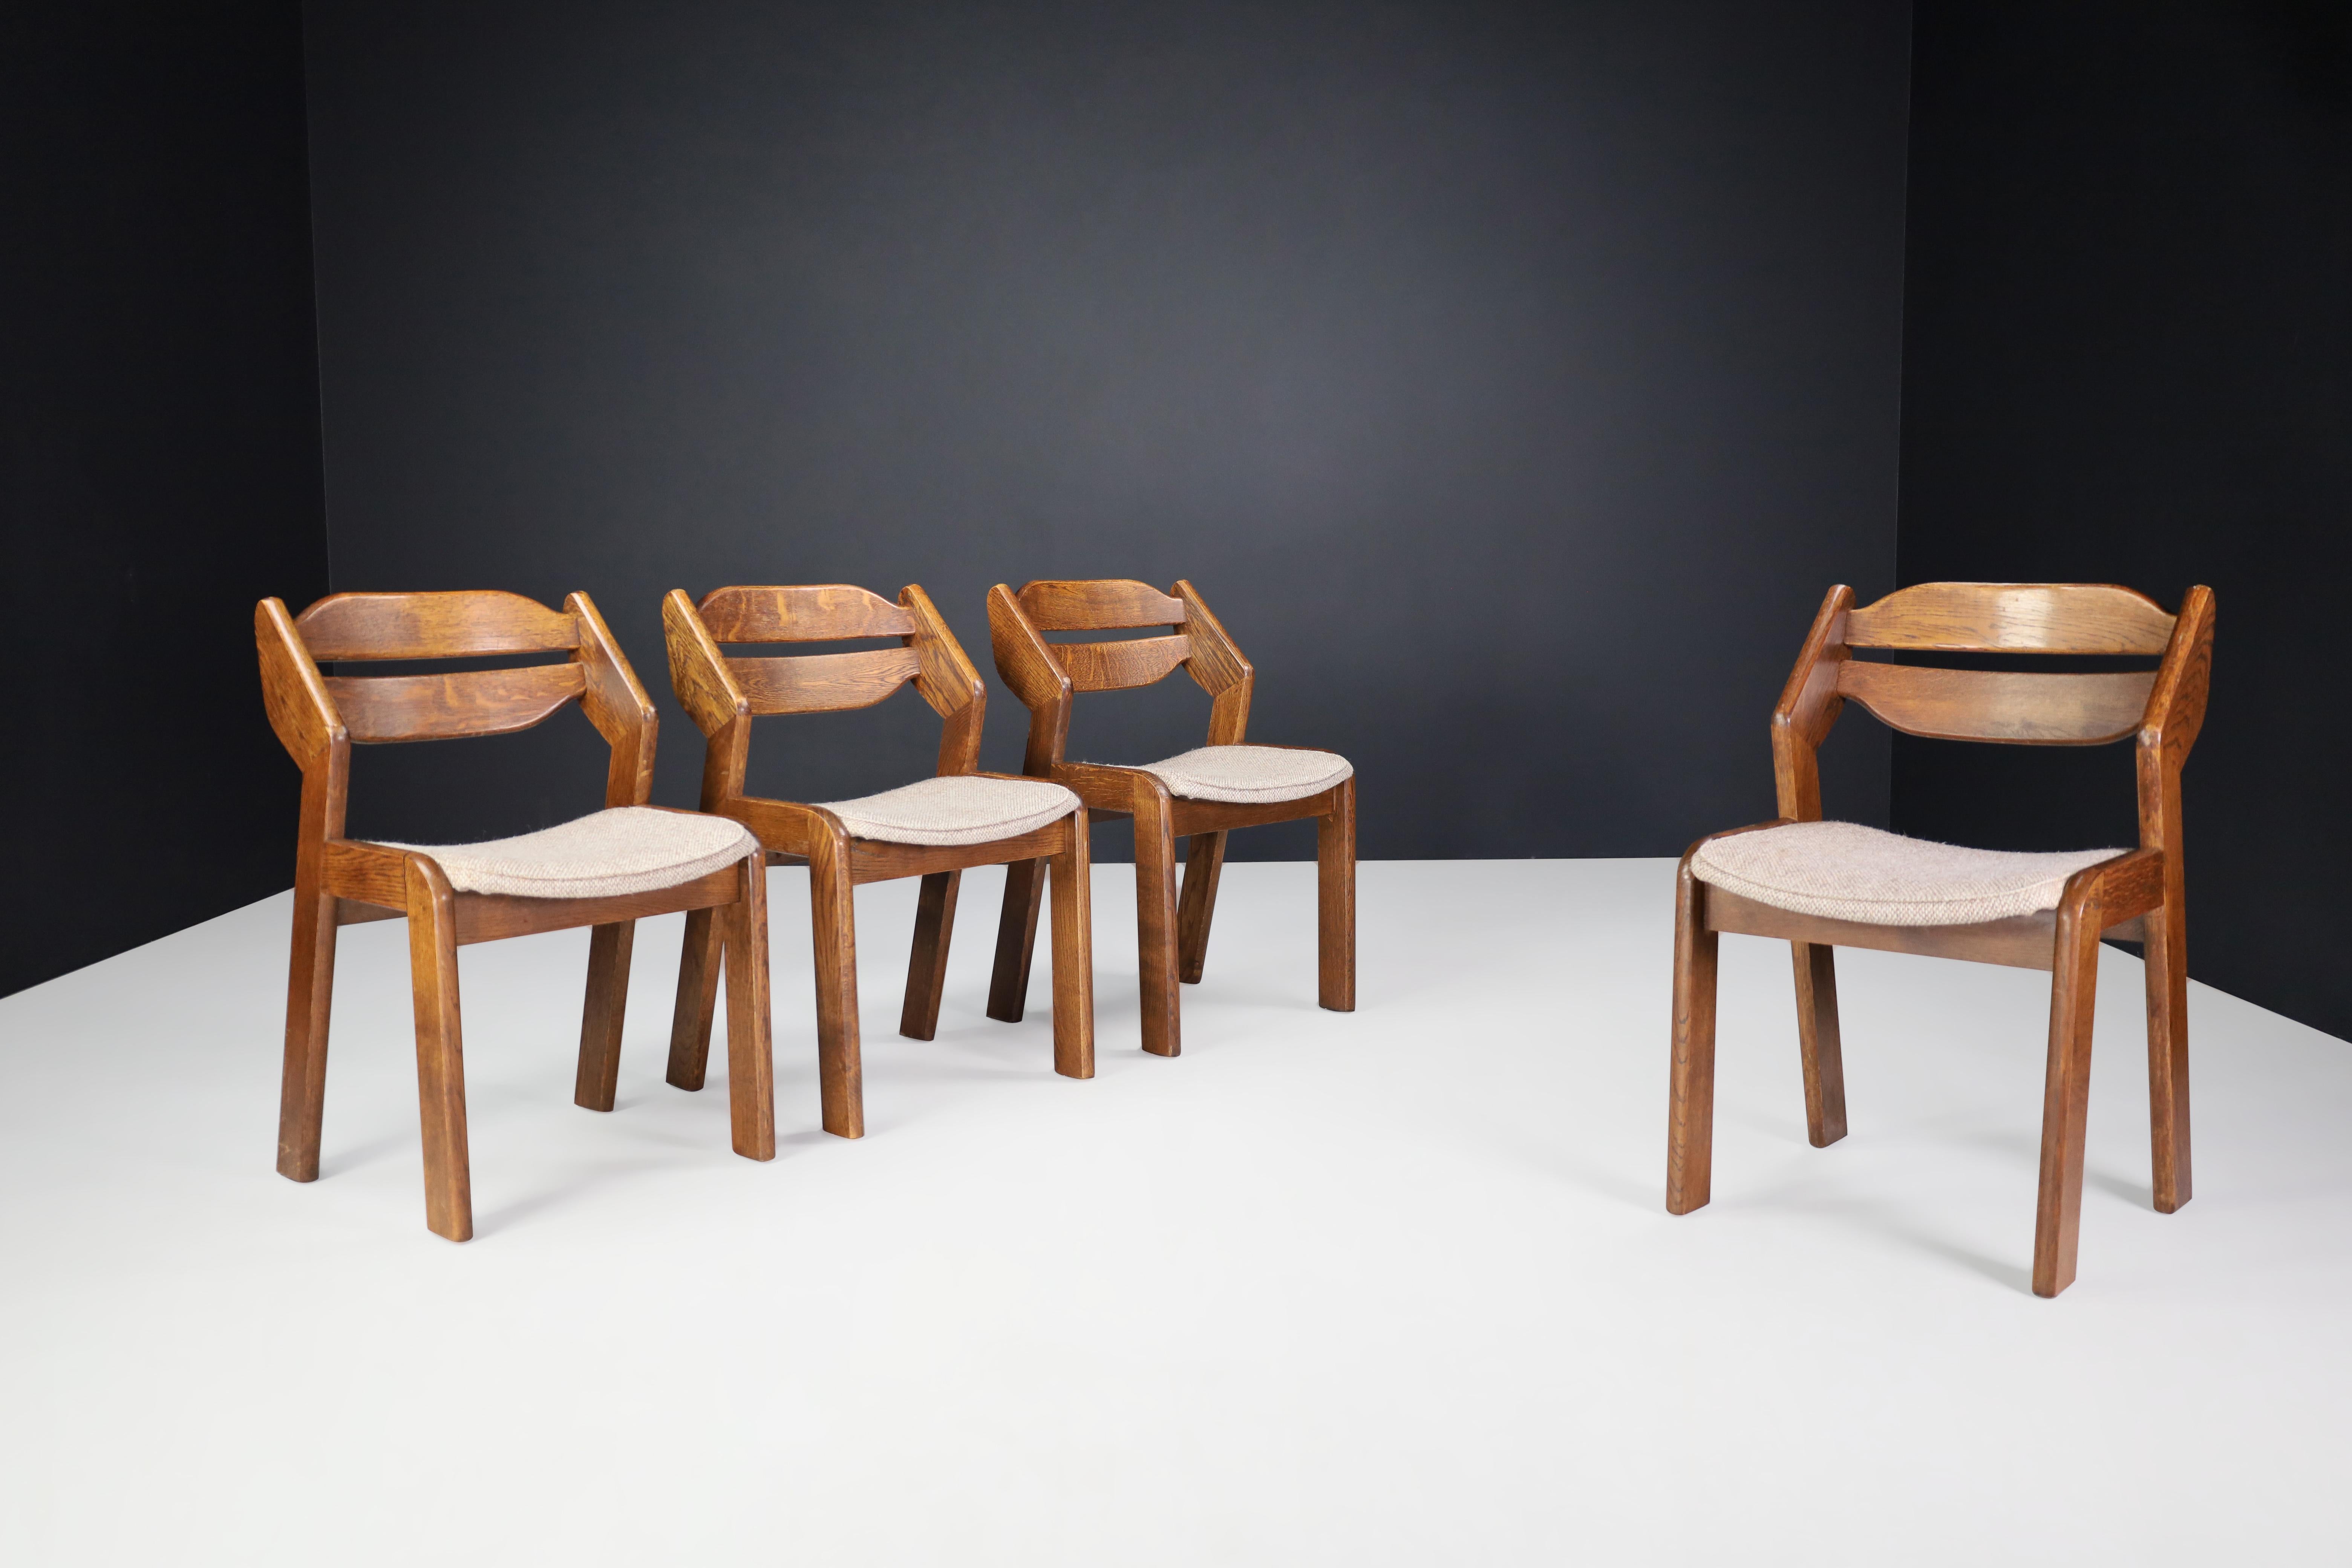 Chaises de salle à manger sculpturales en chêne et tissu, France, années 1960

Ensemble de quatre chaises de salle à manger sculpturales en chêne et tissu, France, années 1960. Ces chaises sont entièrement fabriquées en bois et en jonc. Ils sont